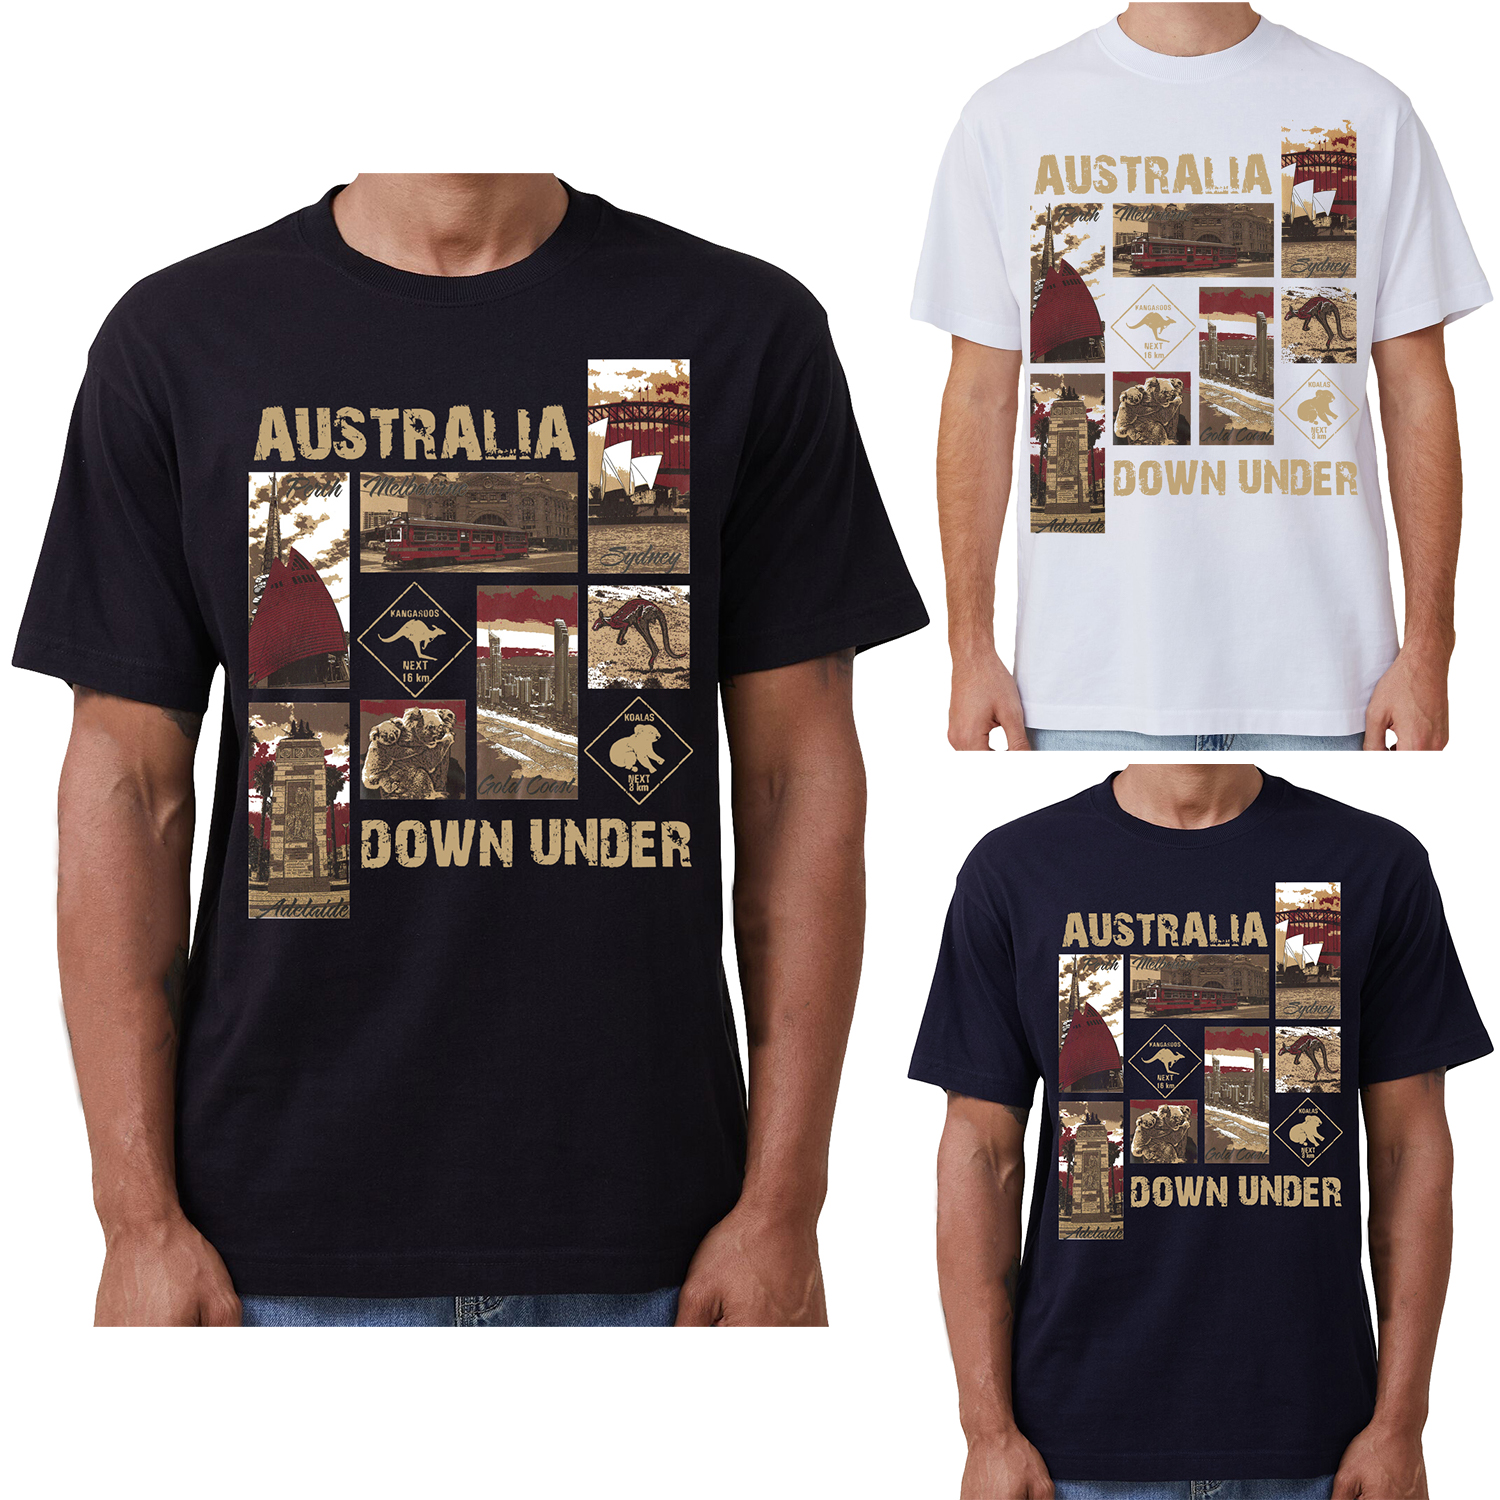 100% Cotton Australia Down Under Souvenir T-Shirt Unisex Adult Iconic Tee Top